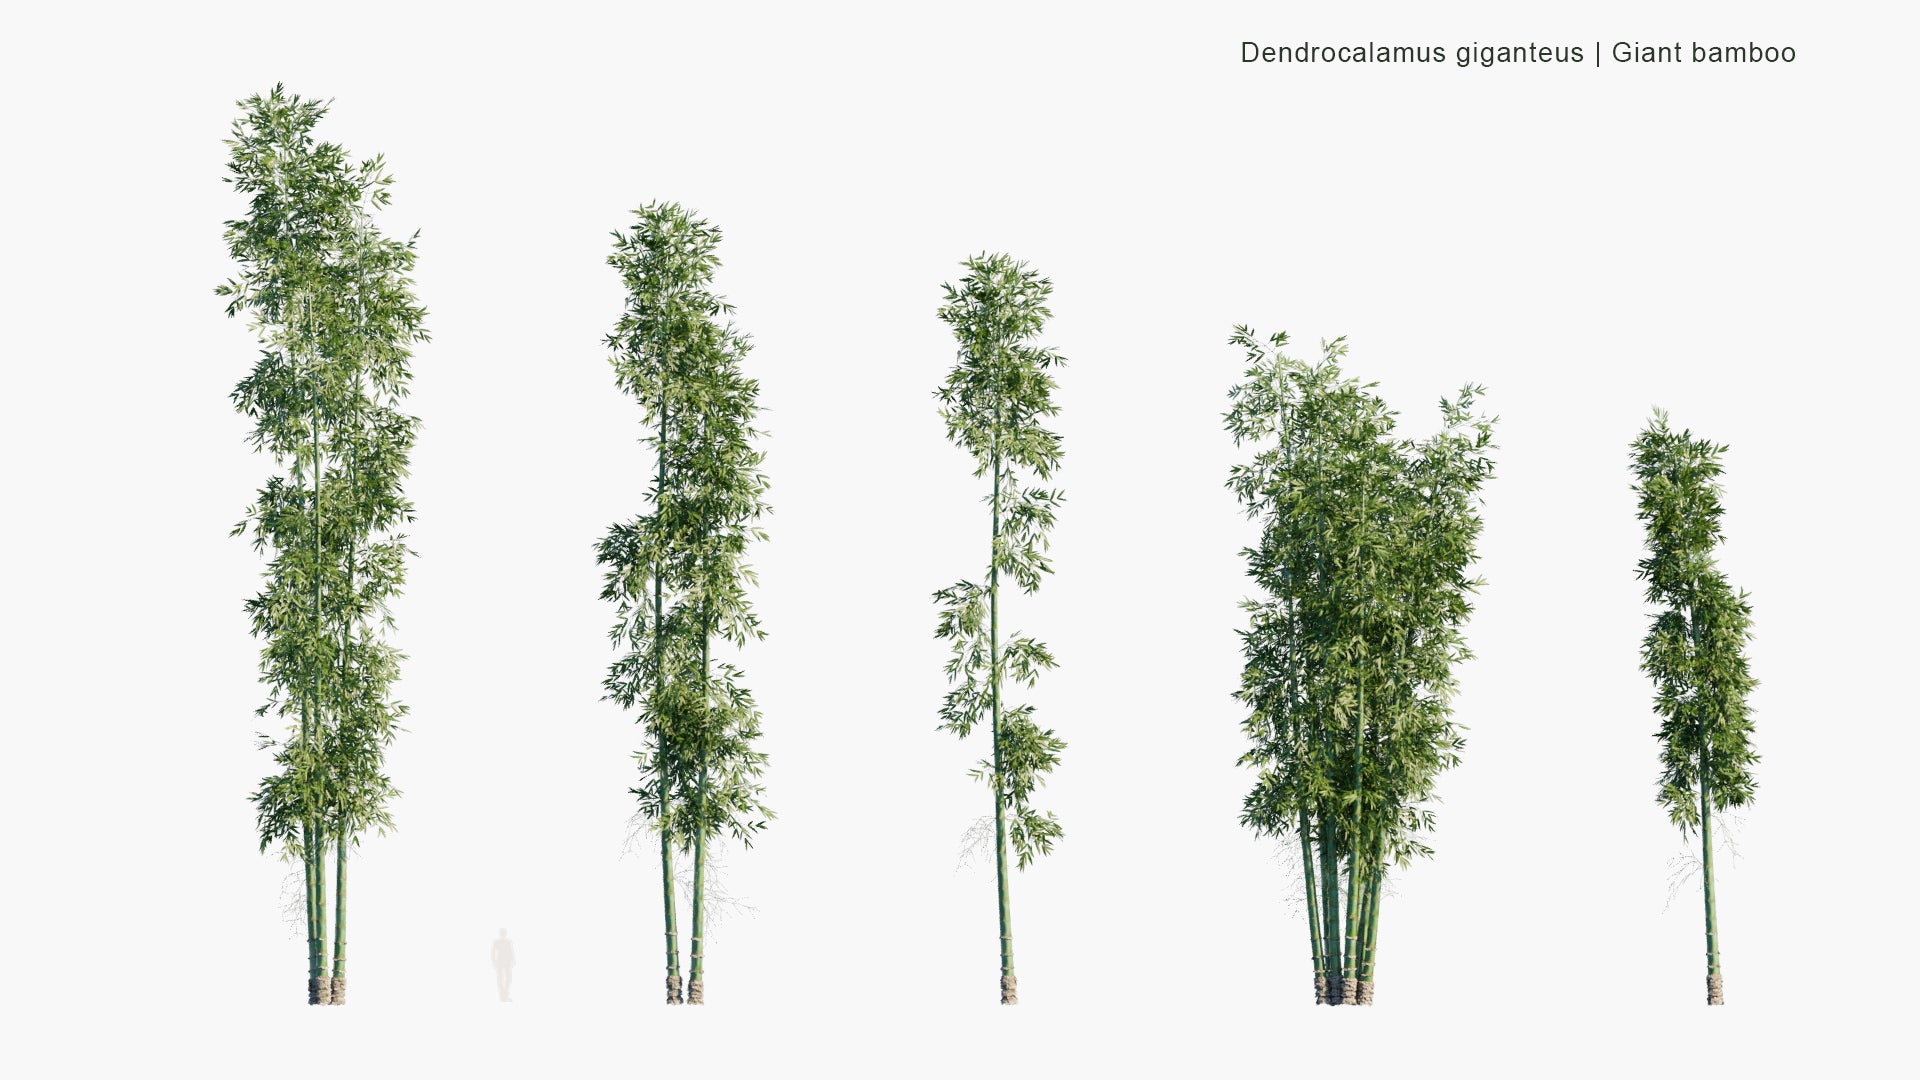 Low Poly Dendrocalamus Giganteus - Giant Bamboo (3D Model)